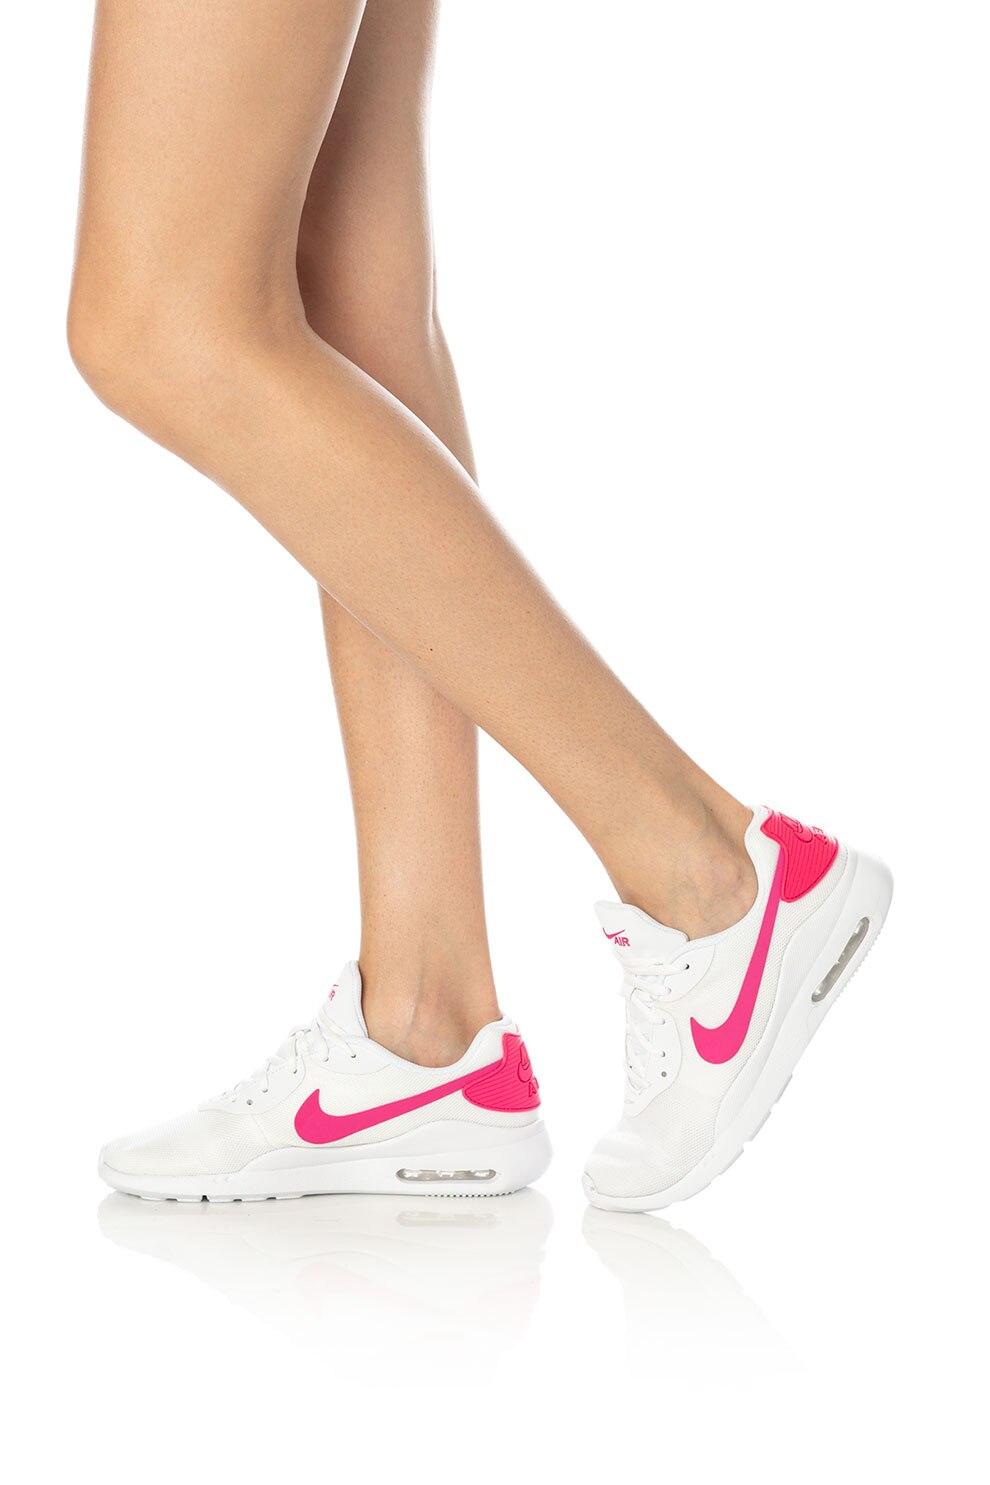 sponge Bot Liquefy Nike, Pantofi sport din material textil, cu aplicatii contrastante Air Max  Oketo, Alb, 8.5 - eMAG.ro